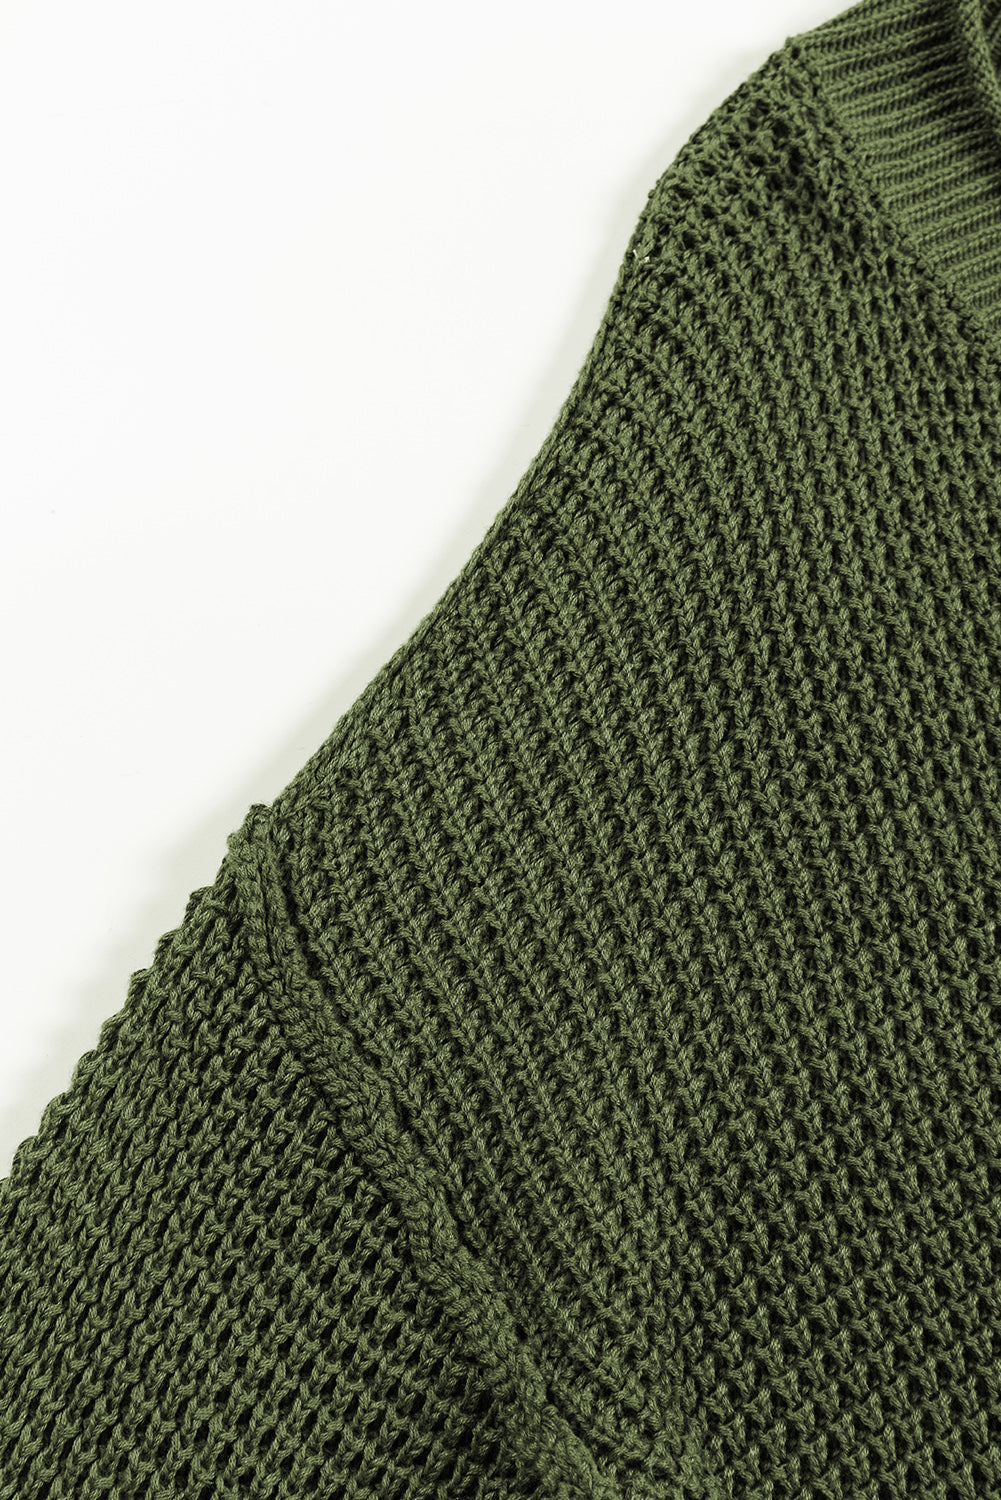 Črn pulover z v-izrezom in pletenimi gumbi na ramenih